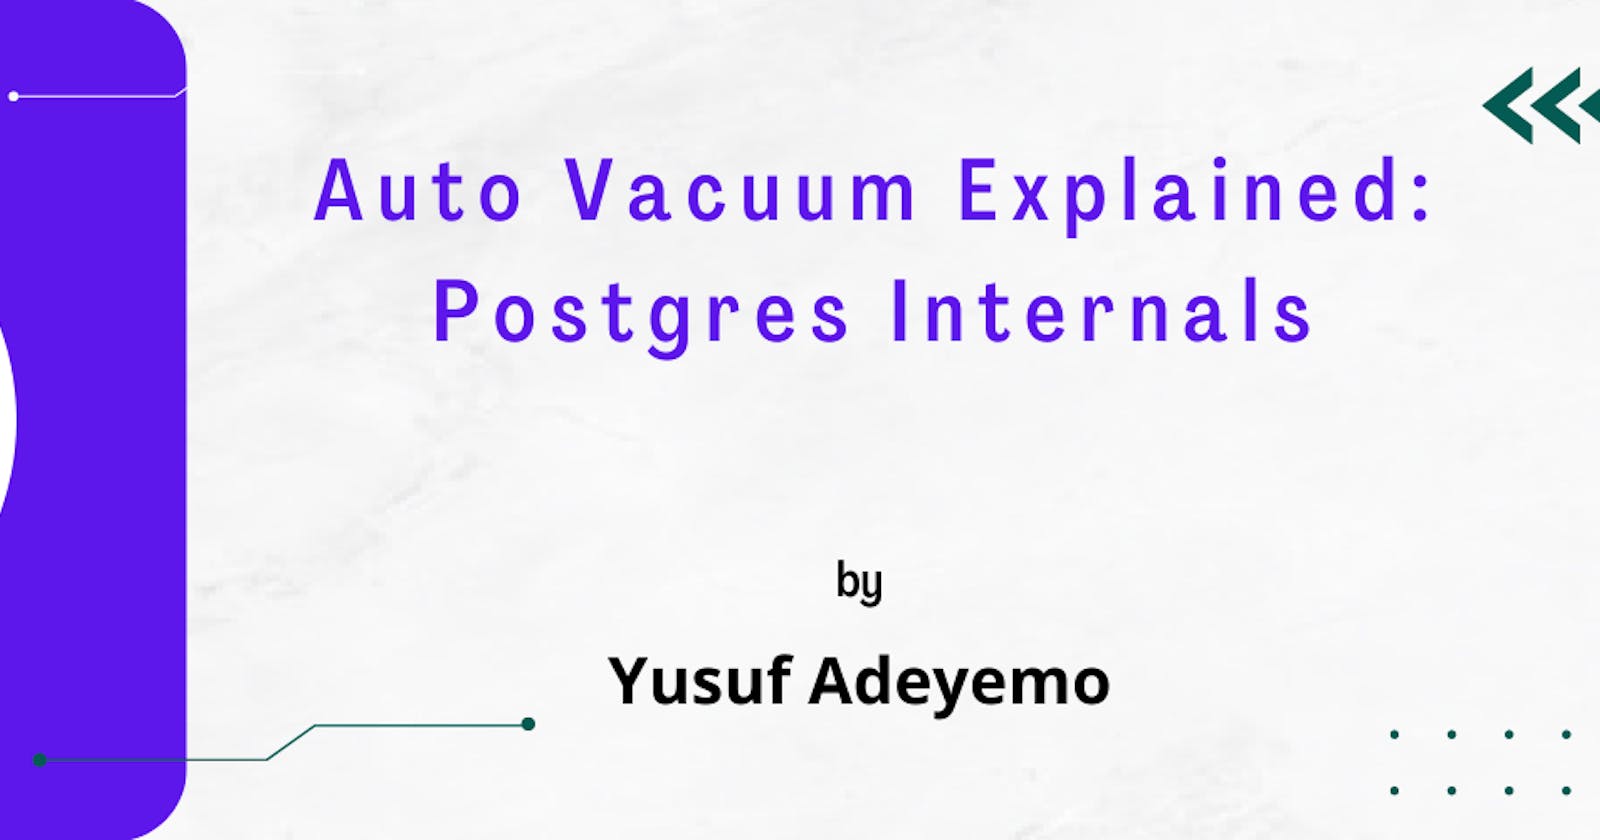 Auto Vacuum Explained: Postgres Internals